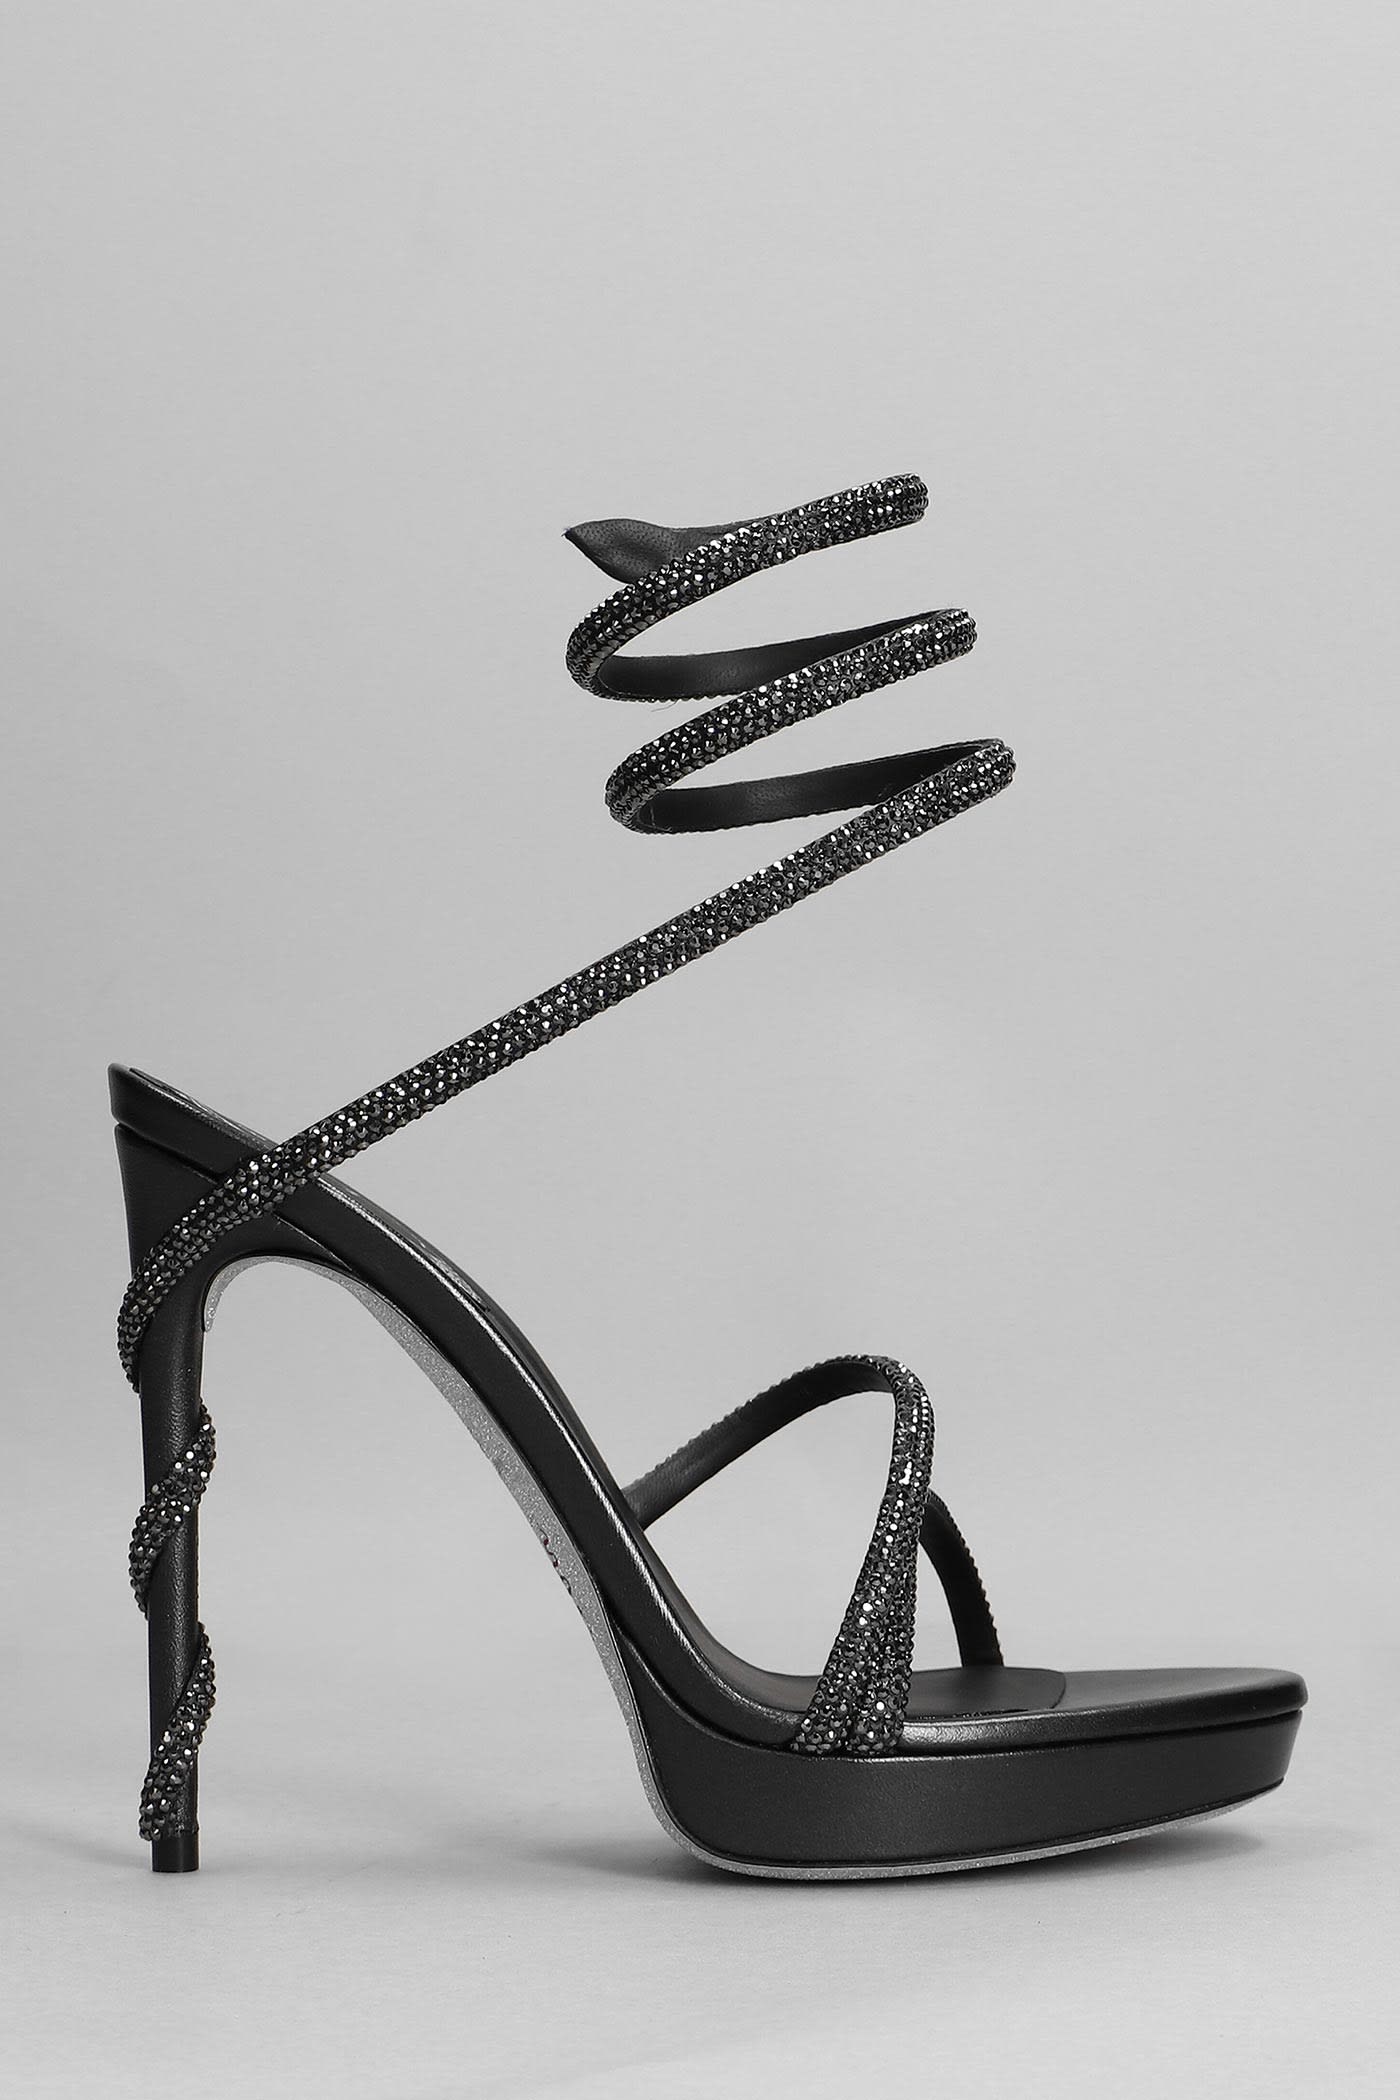 René Caovilla Sandals In Black Leather